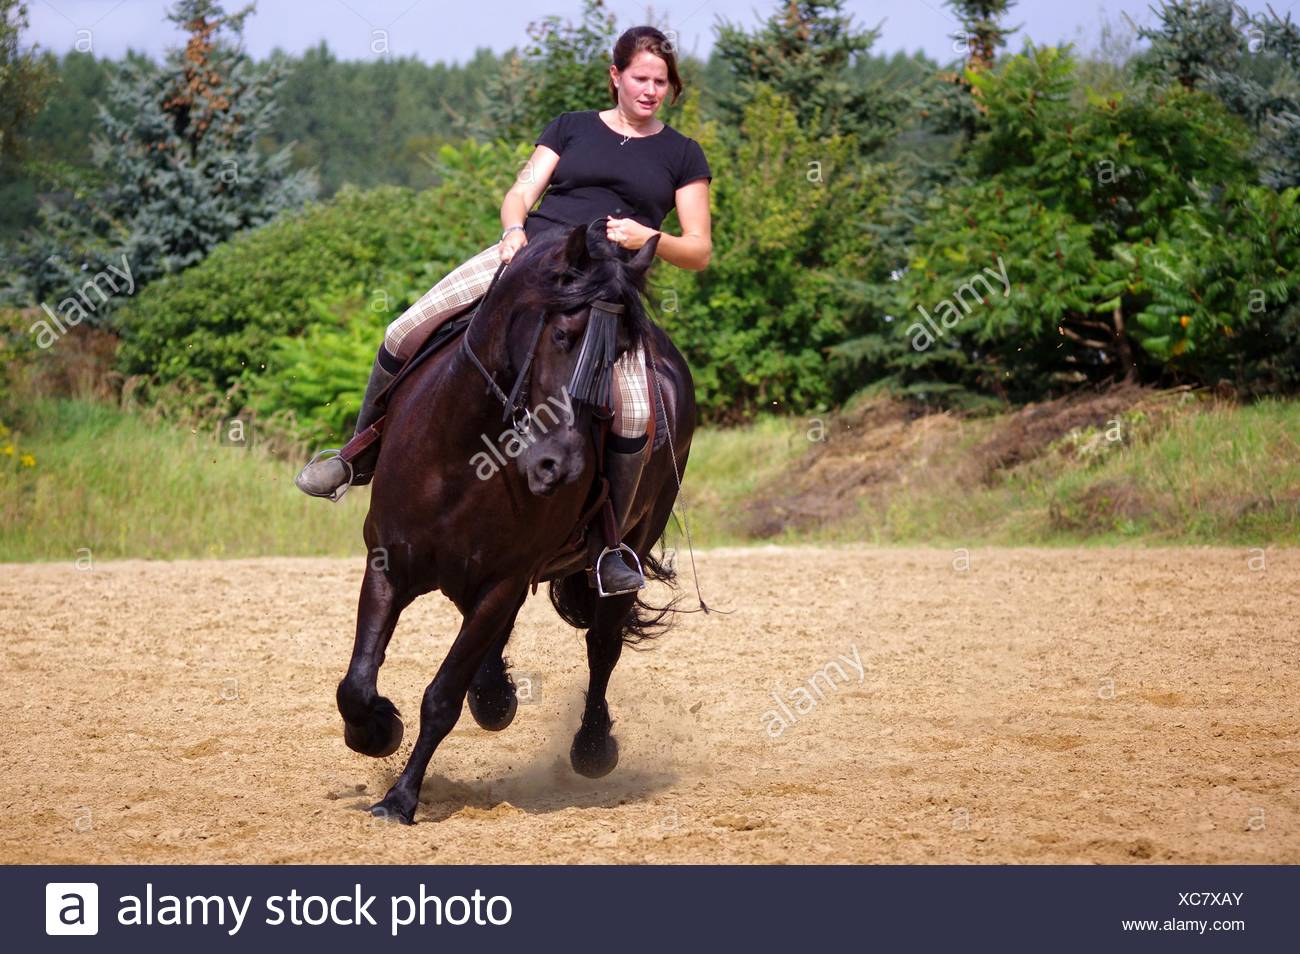 Frau auf pferd